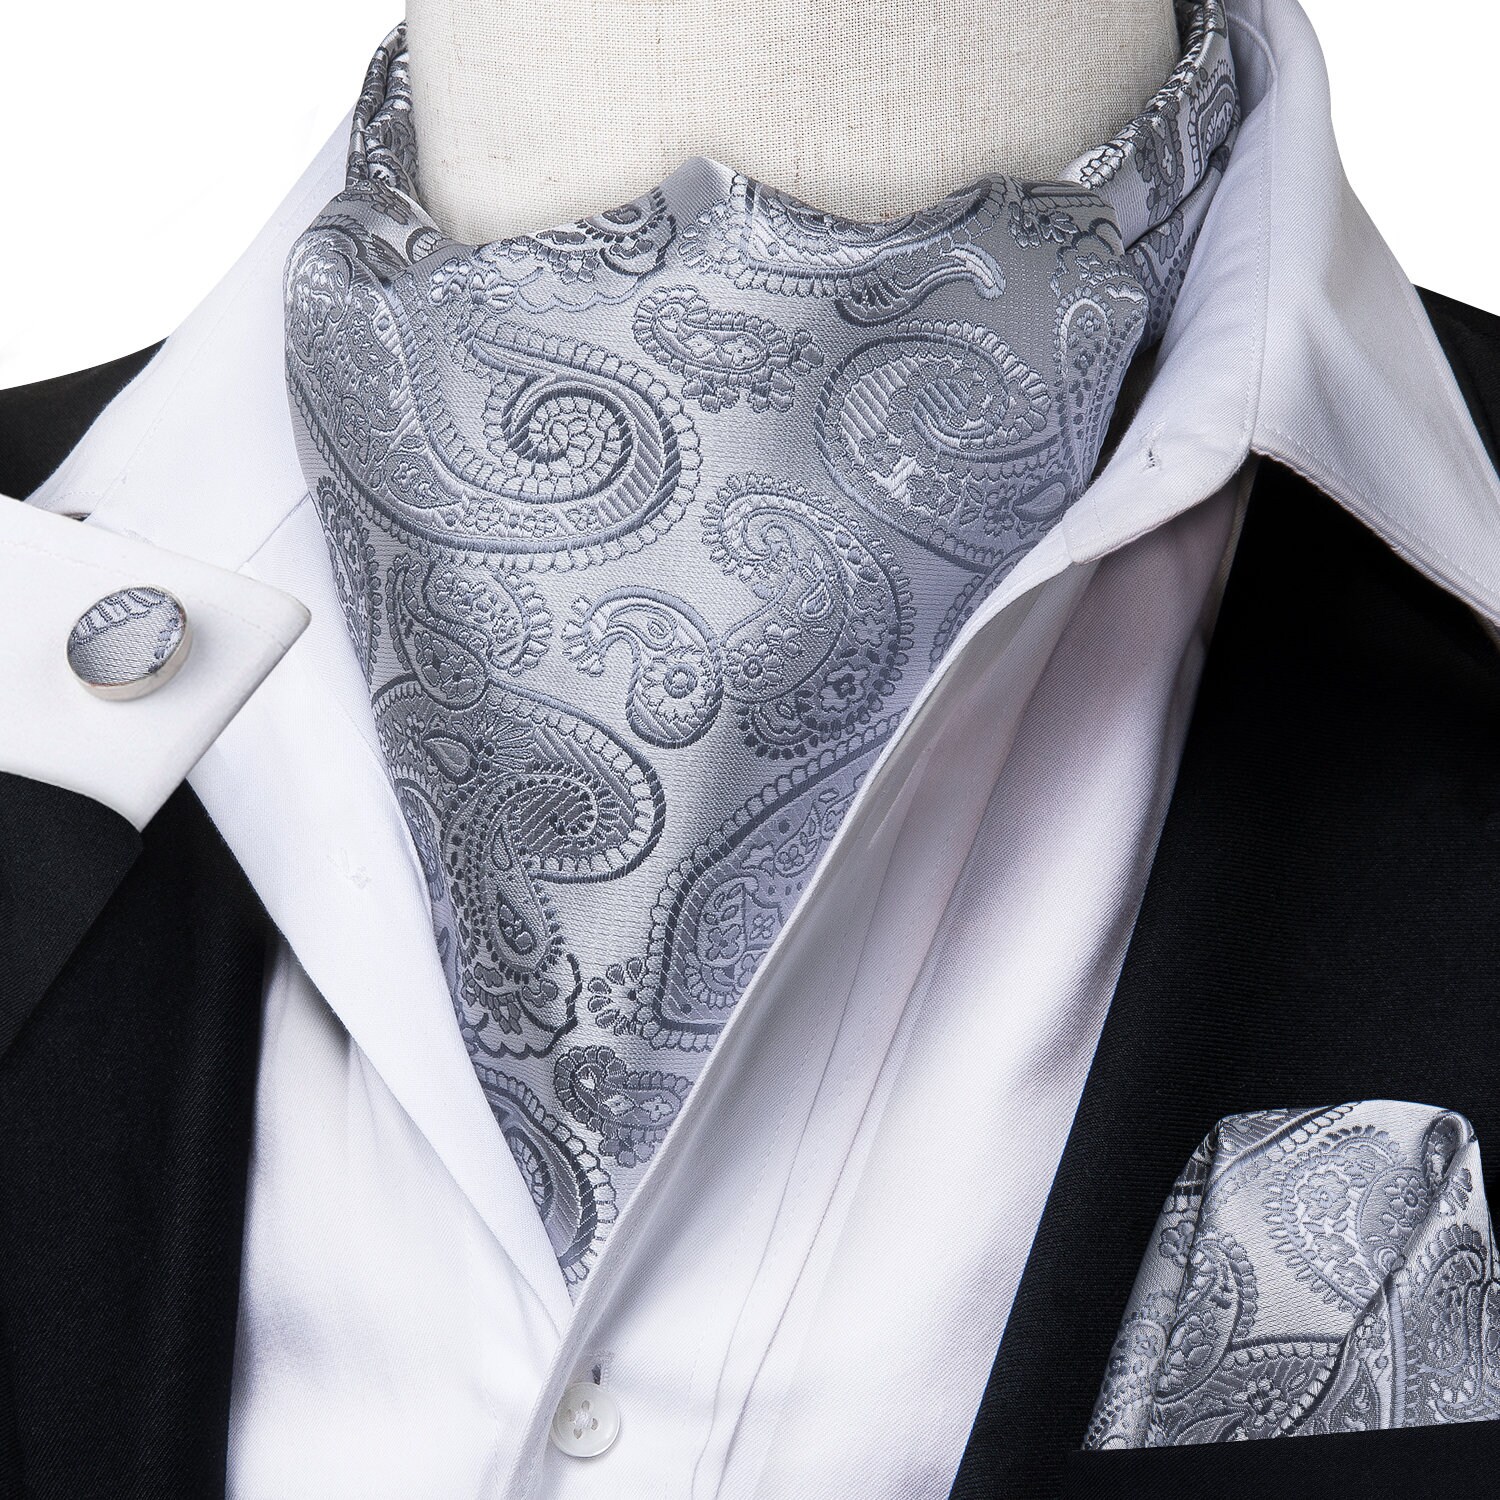 Mens Silk Ascot Cravat Tie Suit Black Paisley Floral Scarf Hanky Ring Set  Casual